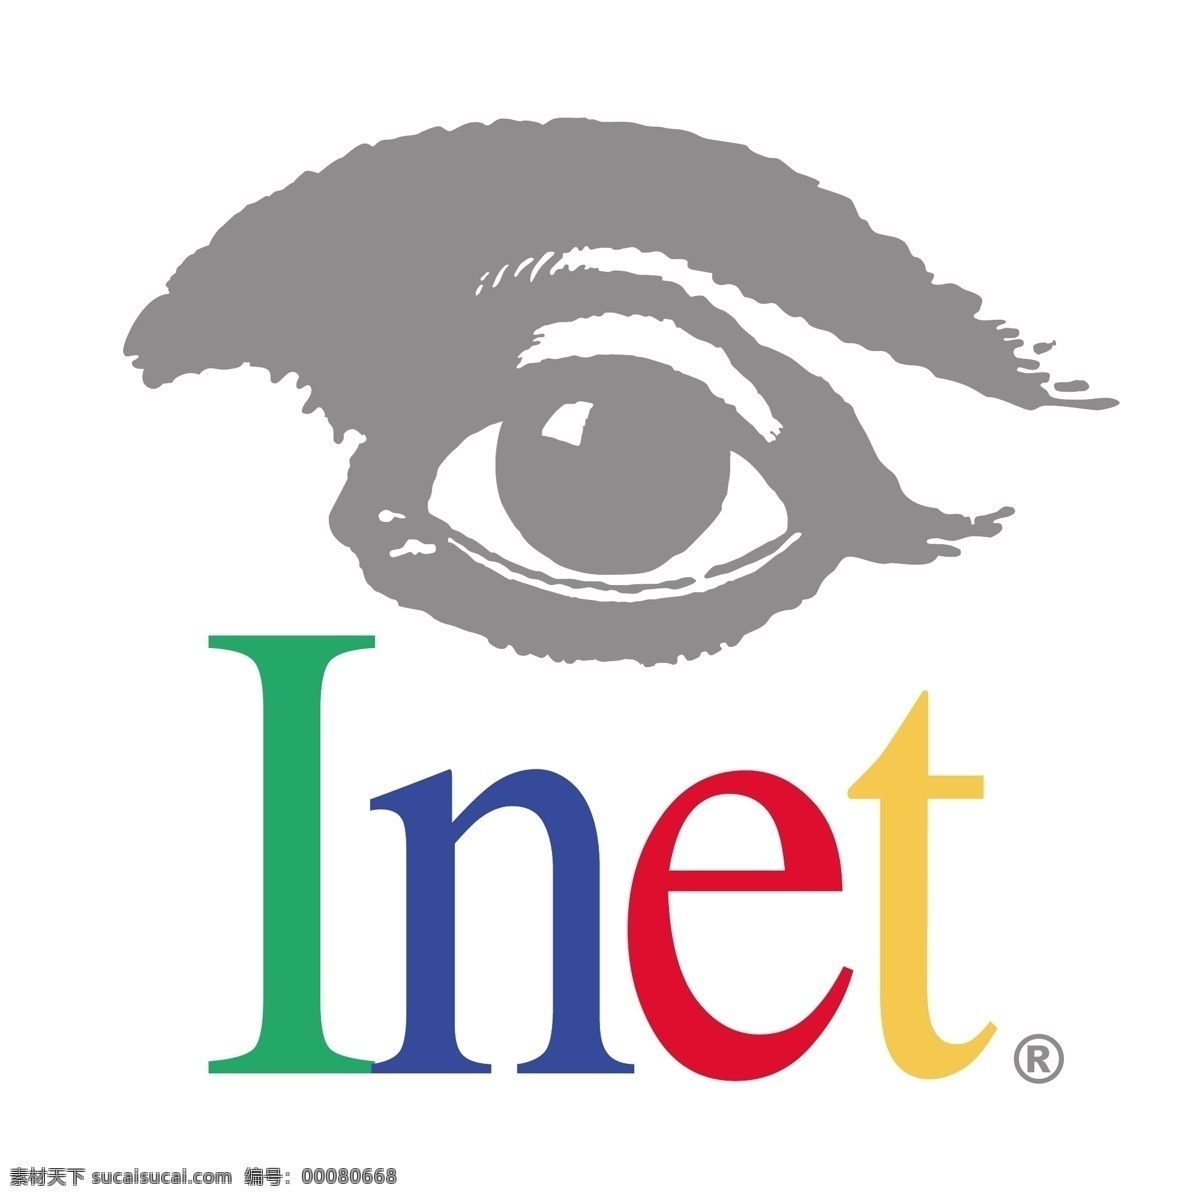 互联网 技术 免费 inet 标识 psd源文件 logo设计